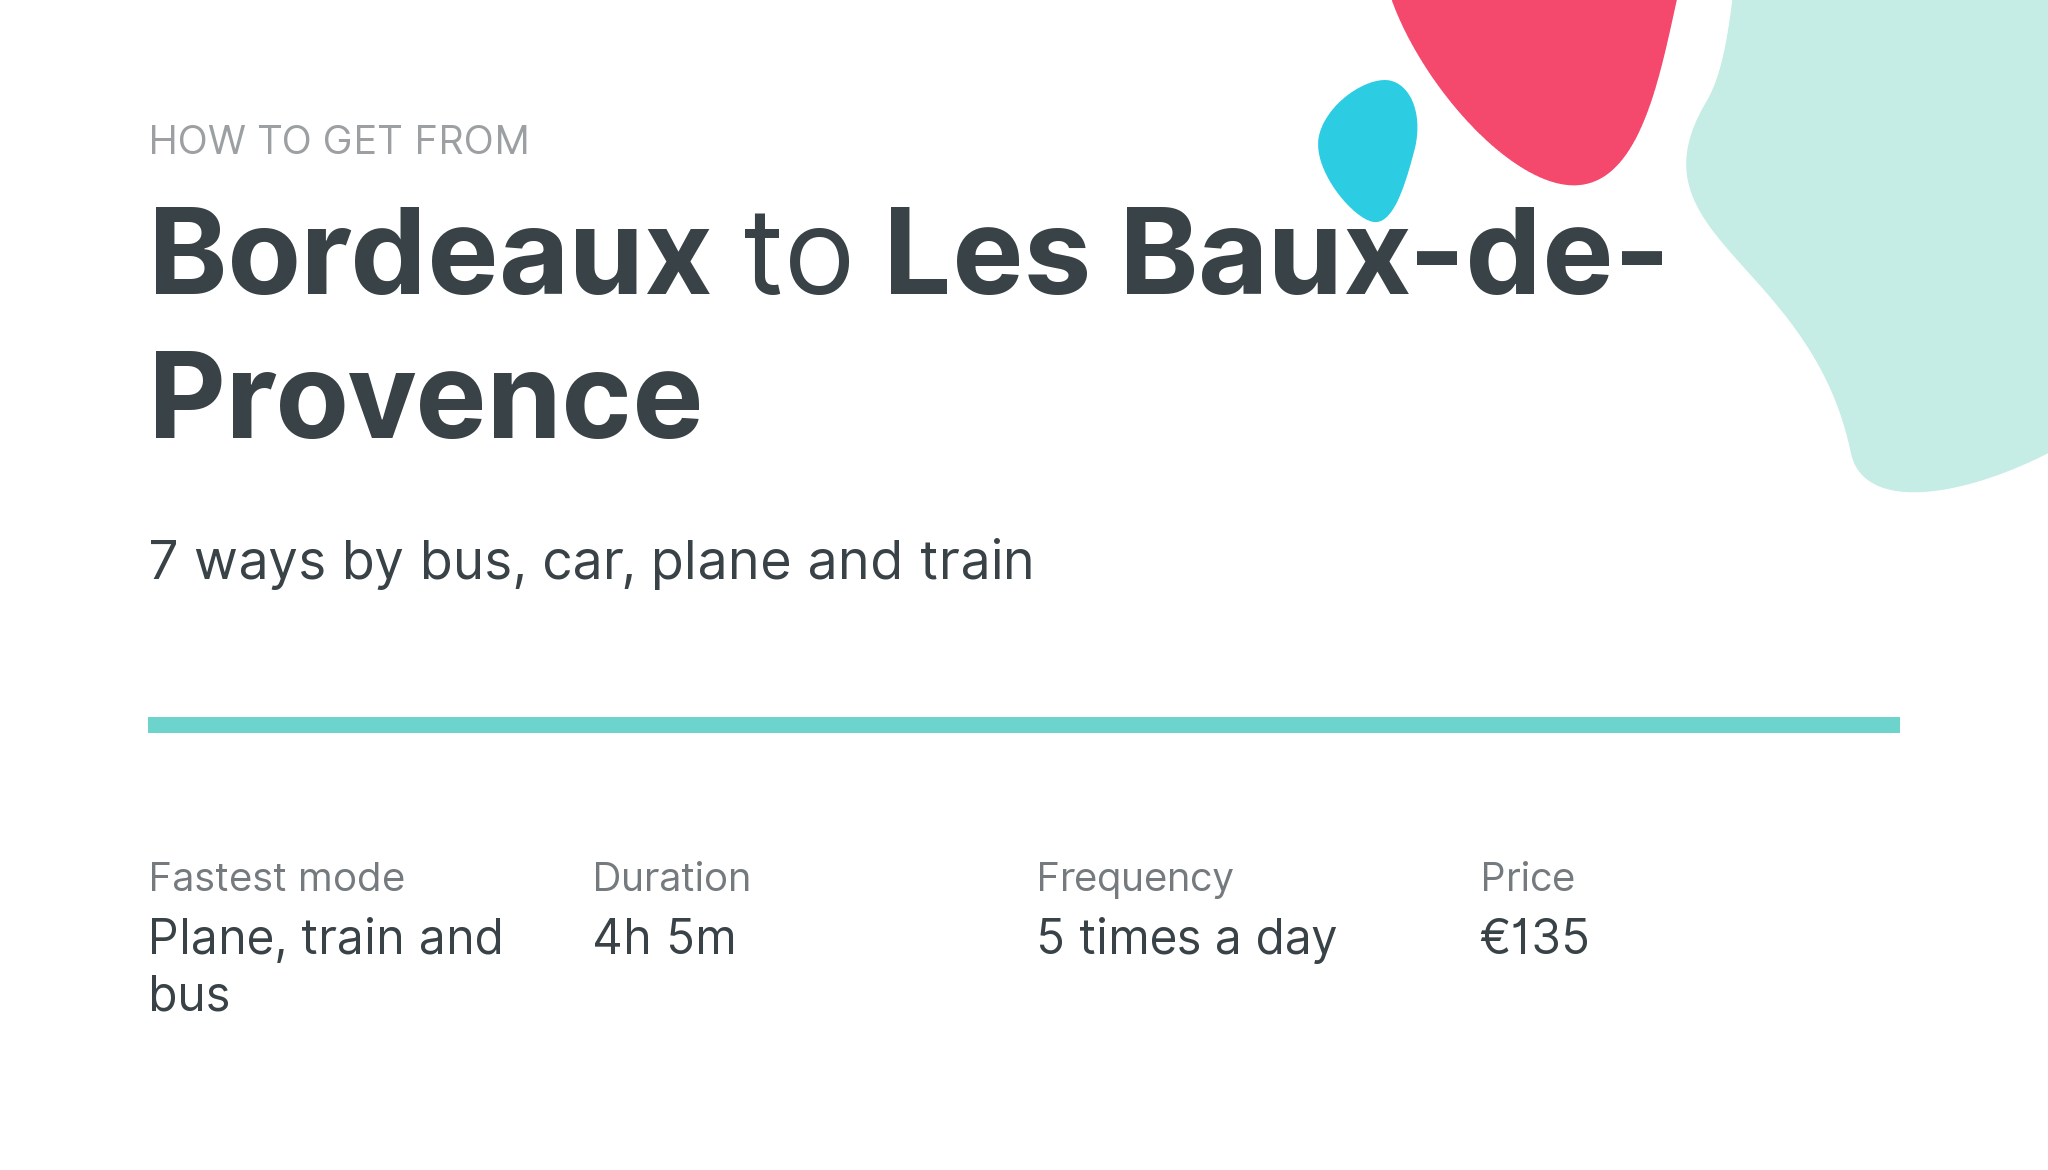 How do I get from Bordeaux to Les Baux-de-Provence